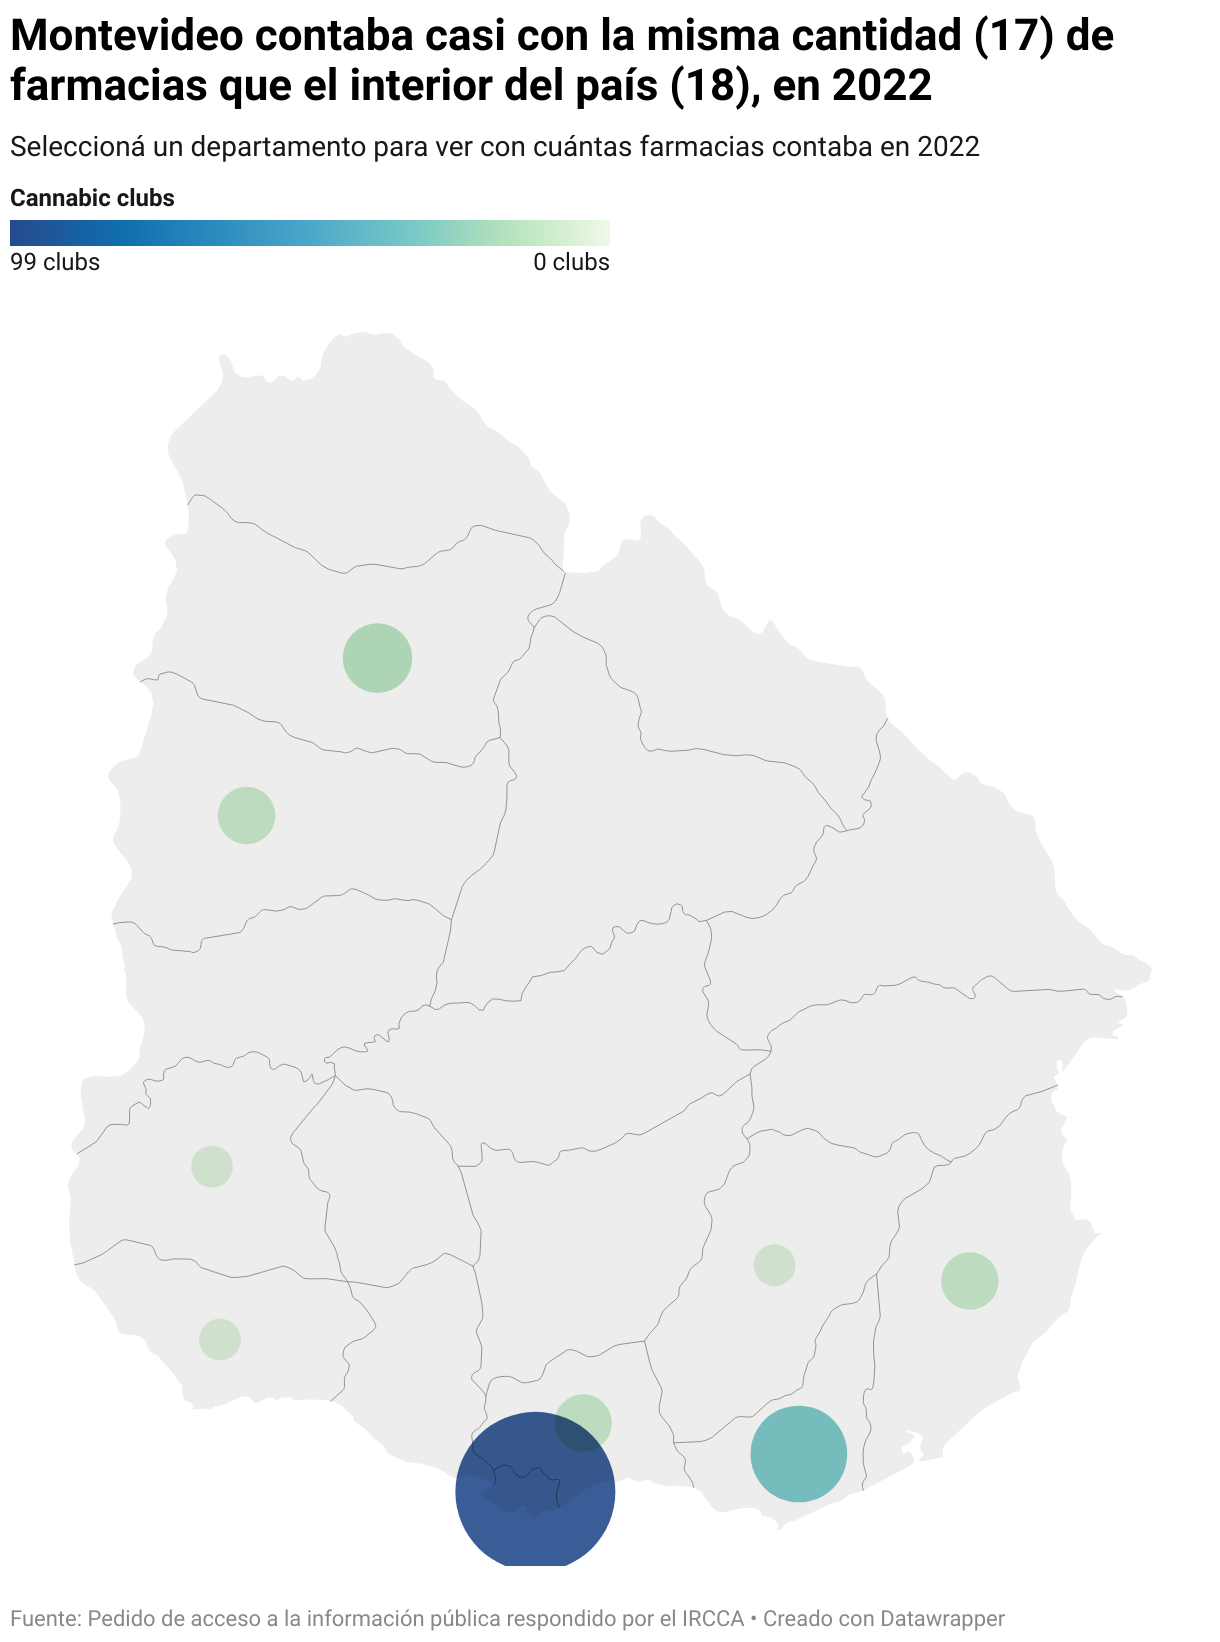 Mapa de farmacias uruguayas que venden marihuana en 2022 donde Montevideo tenía casi el mismo número (17) de farmacias que el interior del país (18). La fuente es el informe IRCCA de diciembre de 2022.